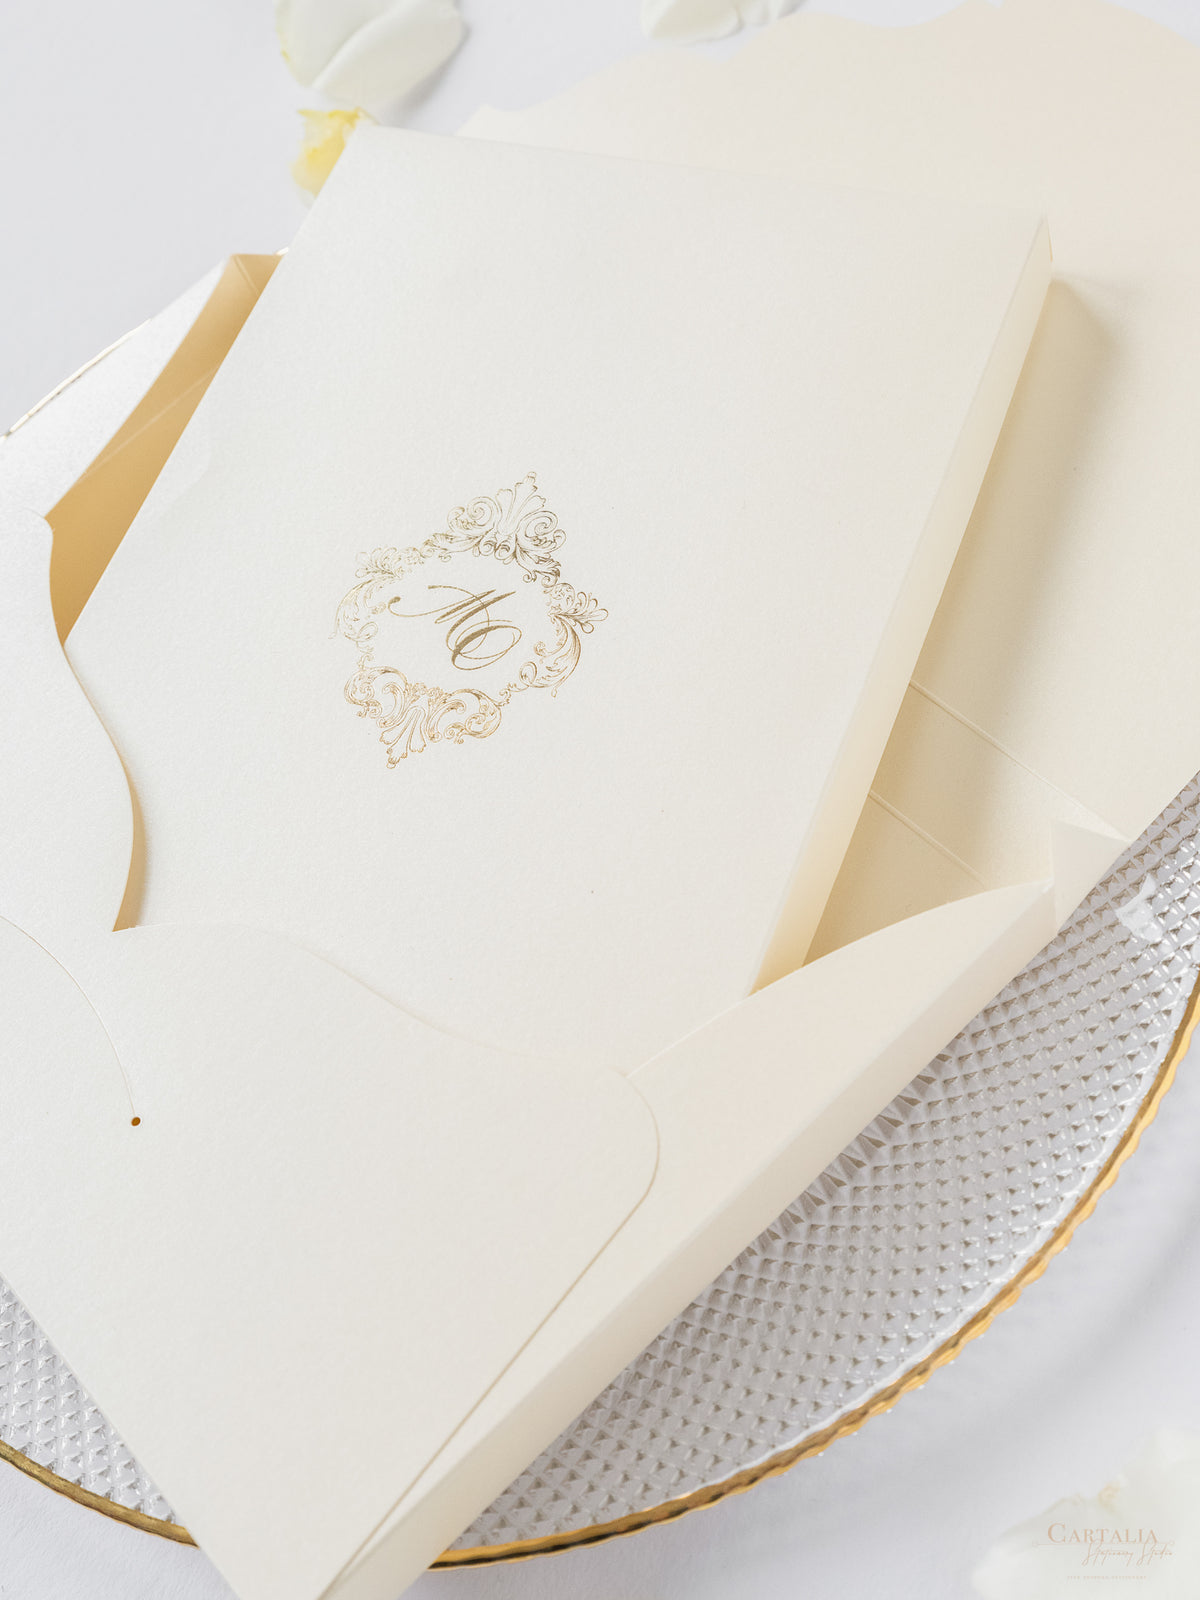 Suite de invitación de lujo en caja con espejo dorado y champán y boceto del lugar en papel de aluminio | M&amp;O de comisión a medida